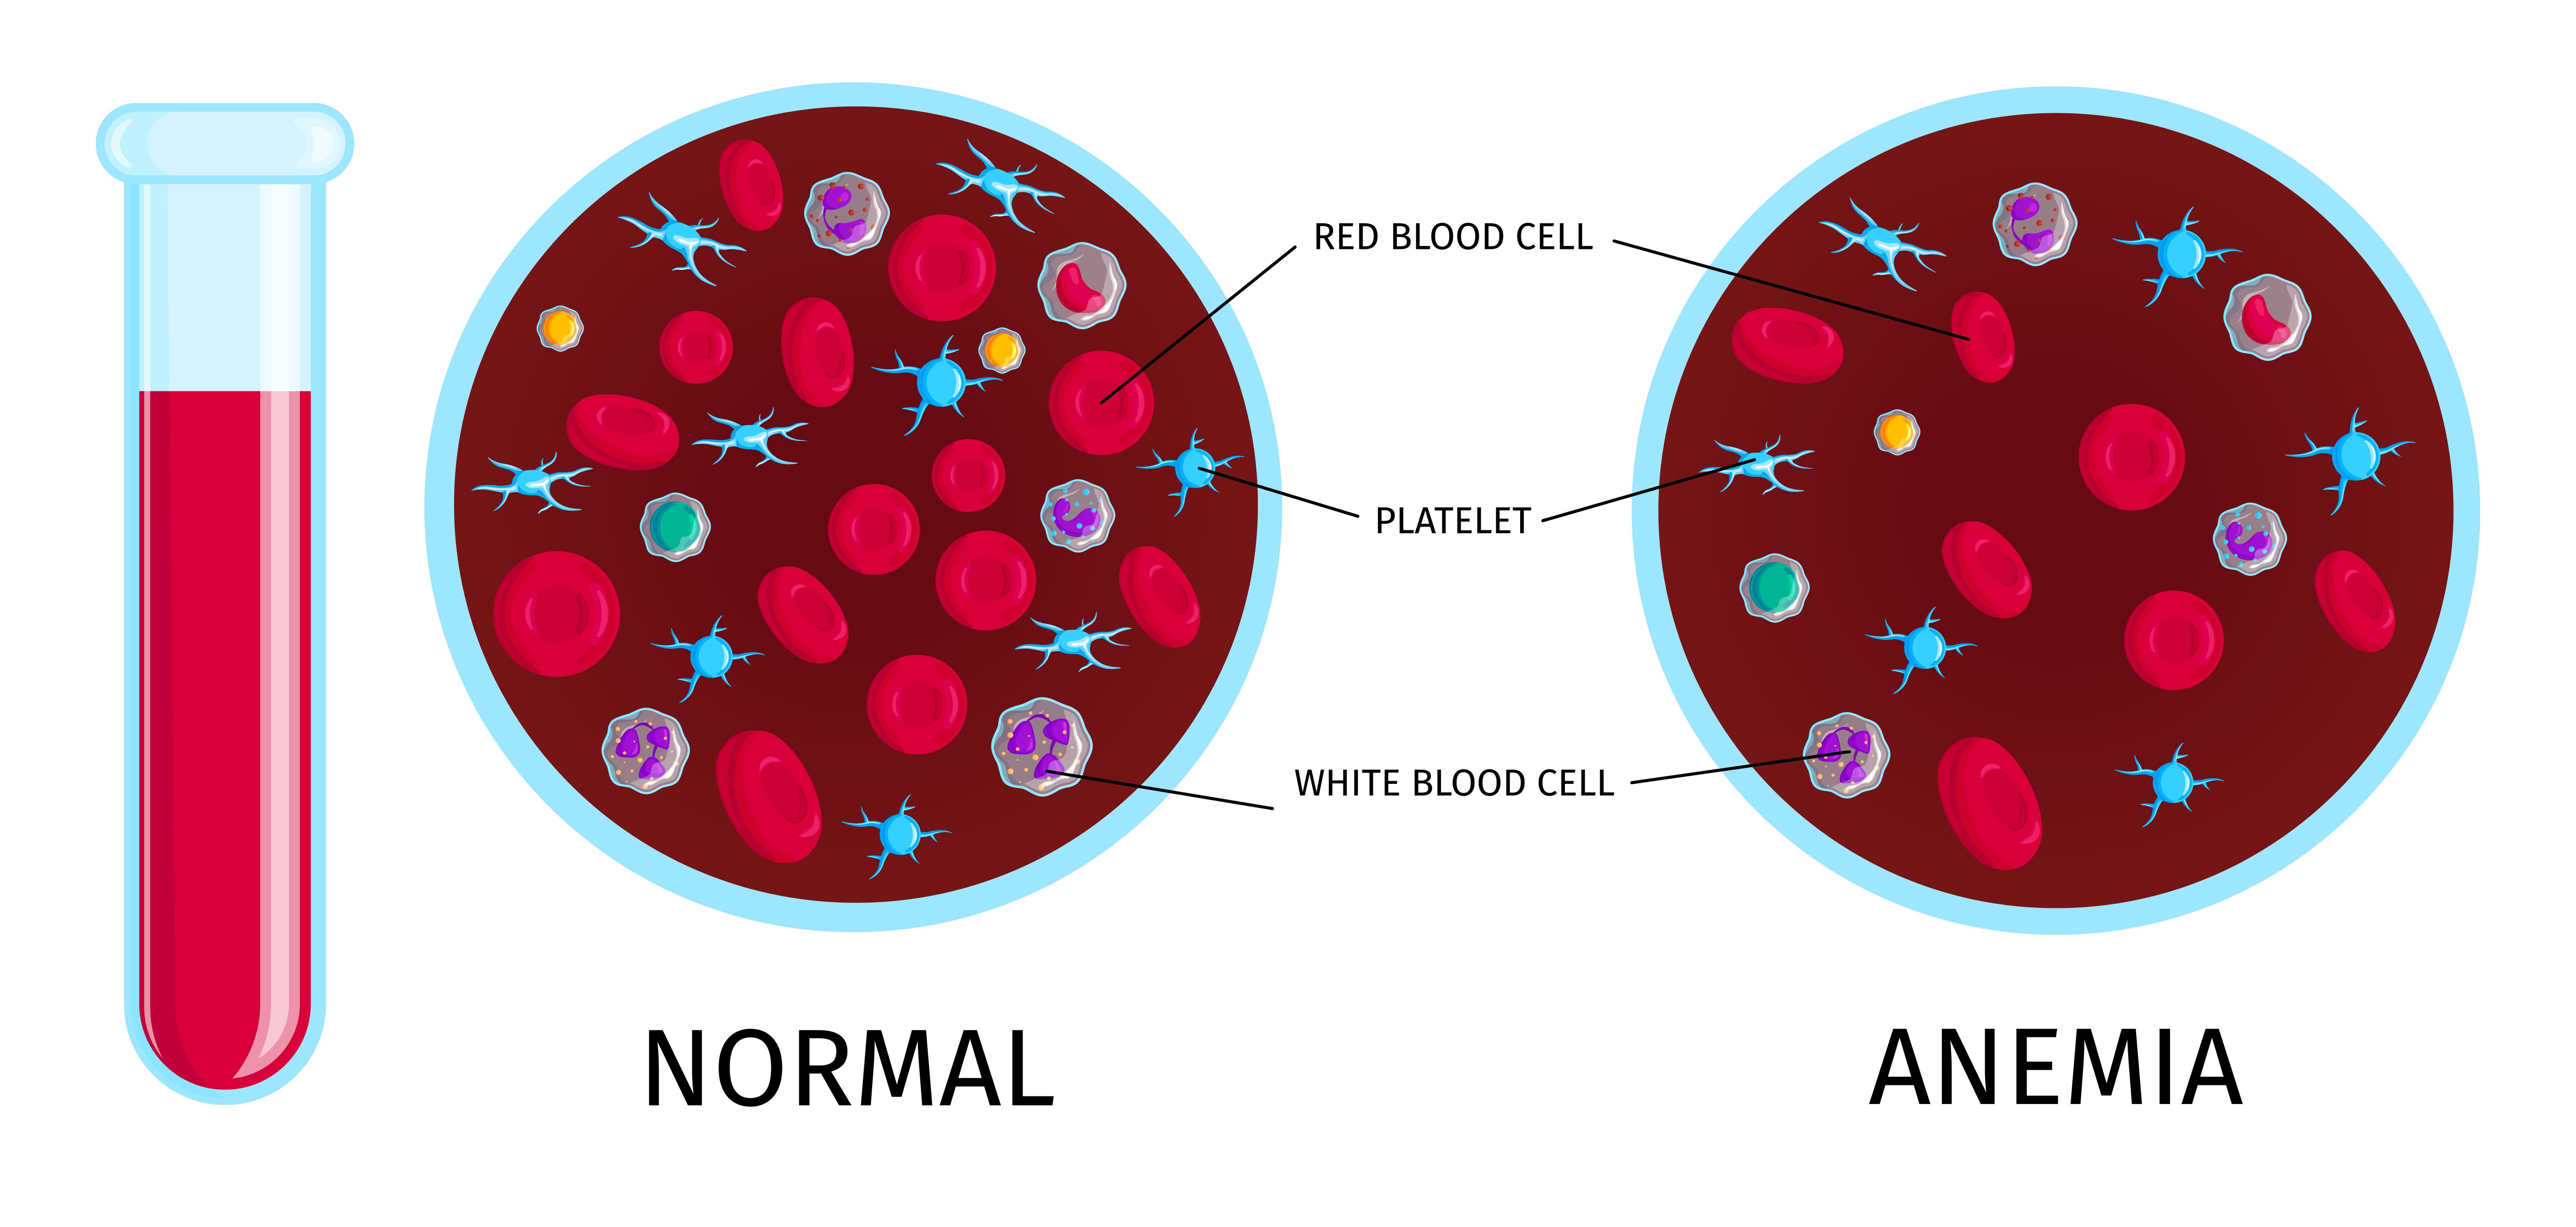 혈액검사상 빈혈을 나타내주는 이미지인데&#44; 왼쪽이 정상적인 혈액의 구성이고&#44; 오른쪽이 적혈구의 숫자가 월등히 적은 빈혈의 혈액 구성이다.